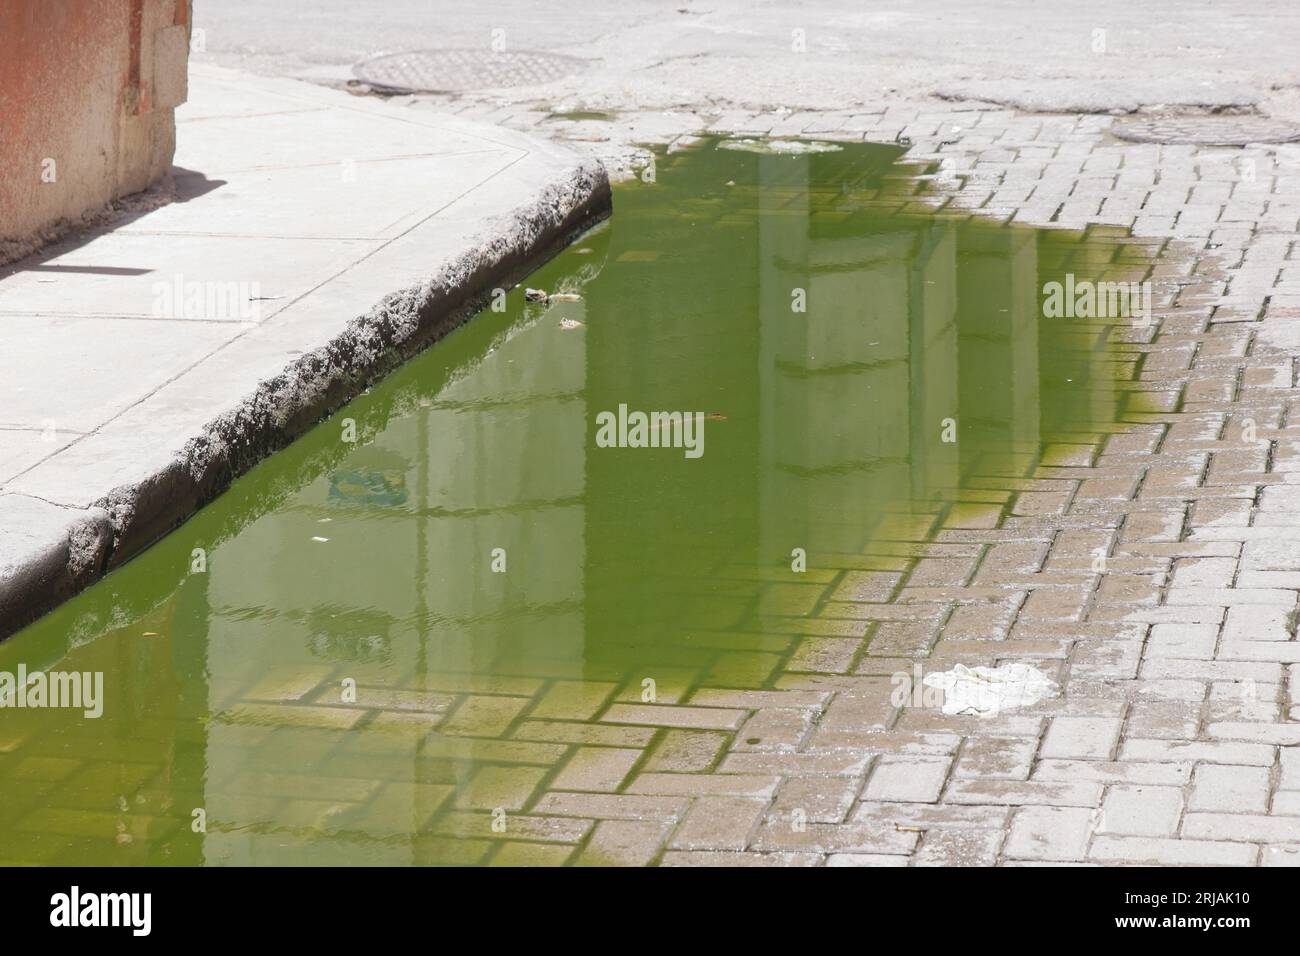 La Havane, Cuba, eau sale stagnante dans une rue pavée. Flaques d'eau non hygiéniques dues à des fuites d'eaux usées. Banque D'Images